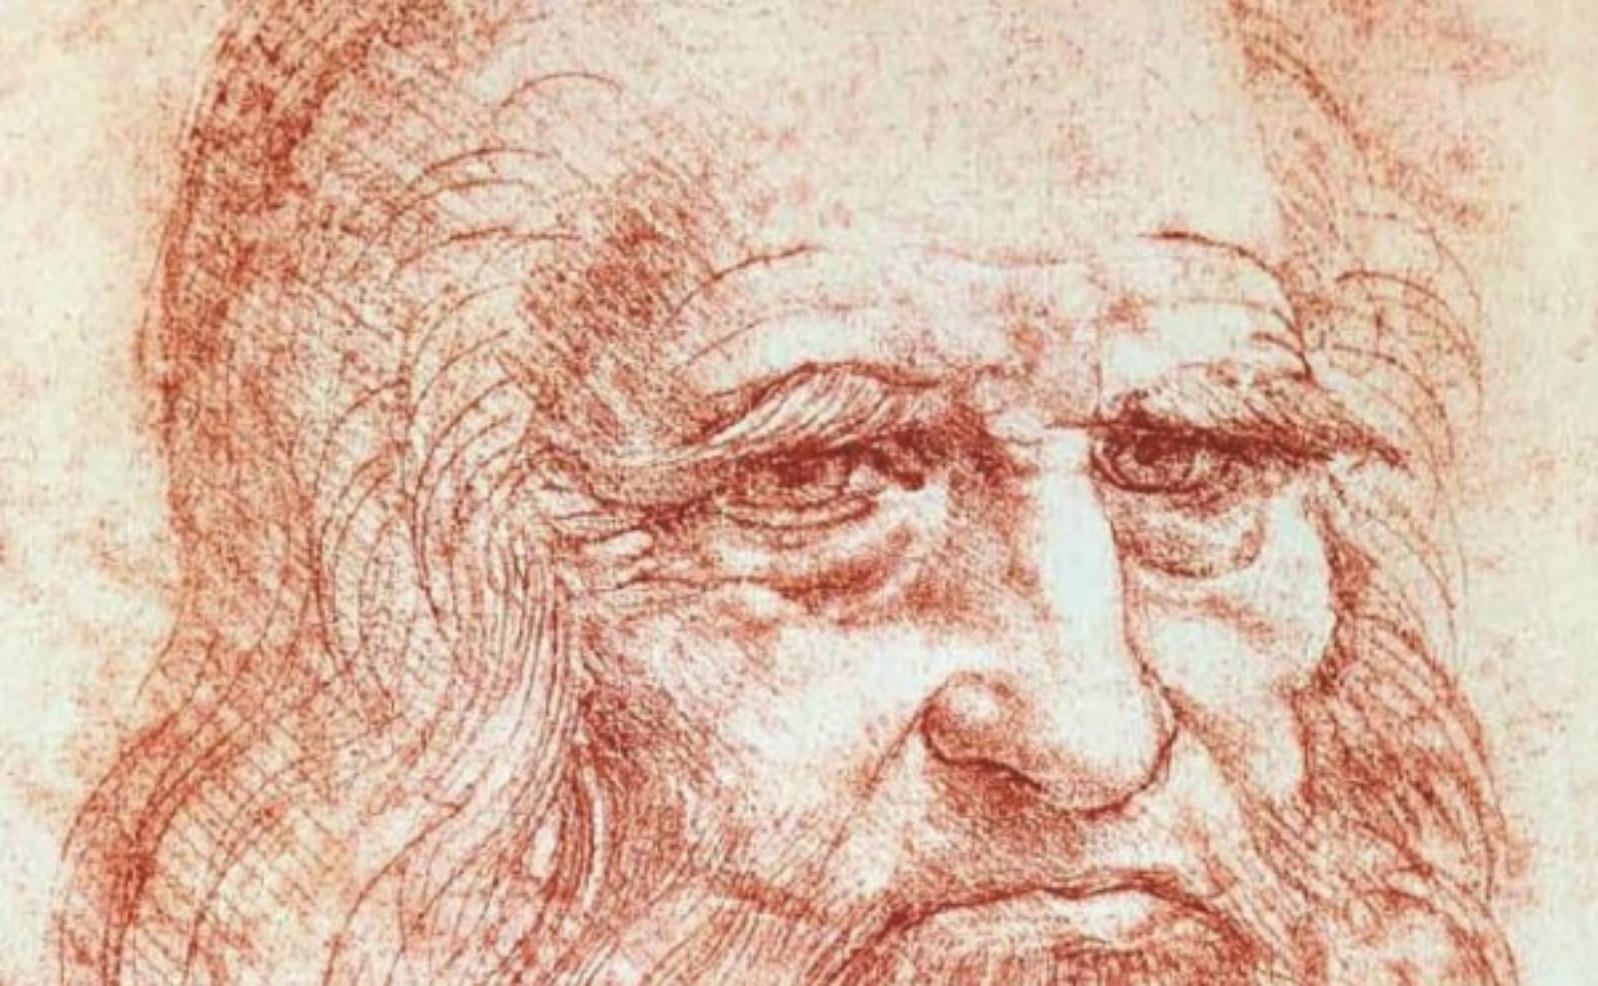 Leonardo Da Vinci : scienza e potere politico a confronto 